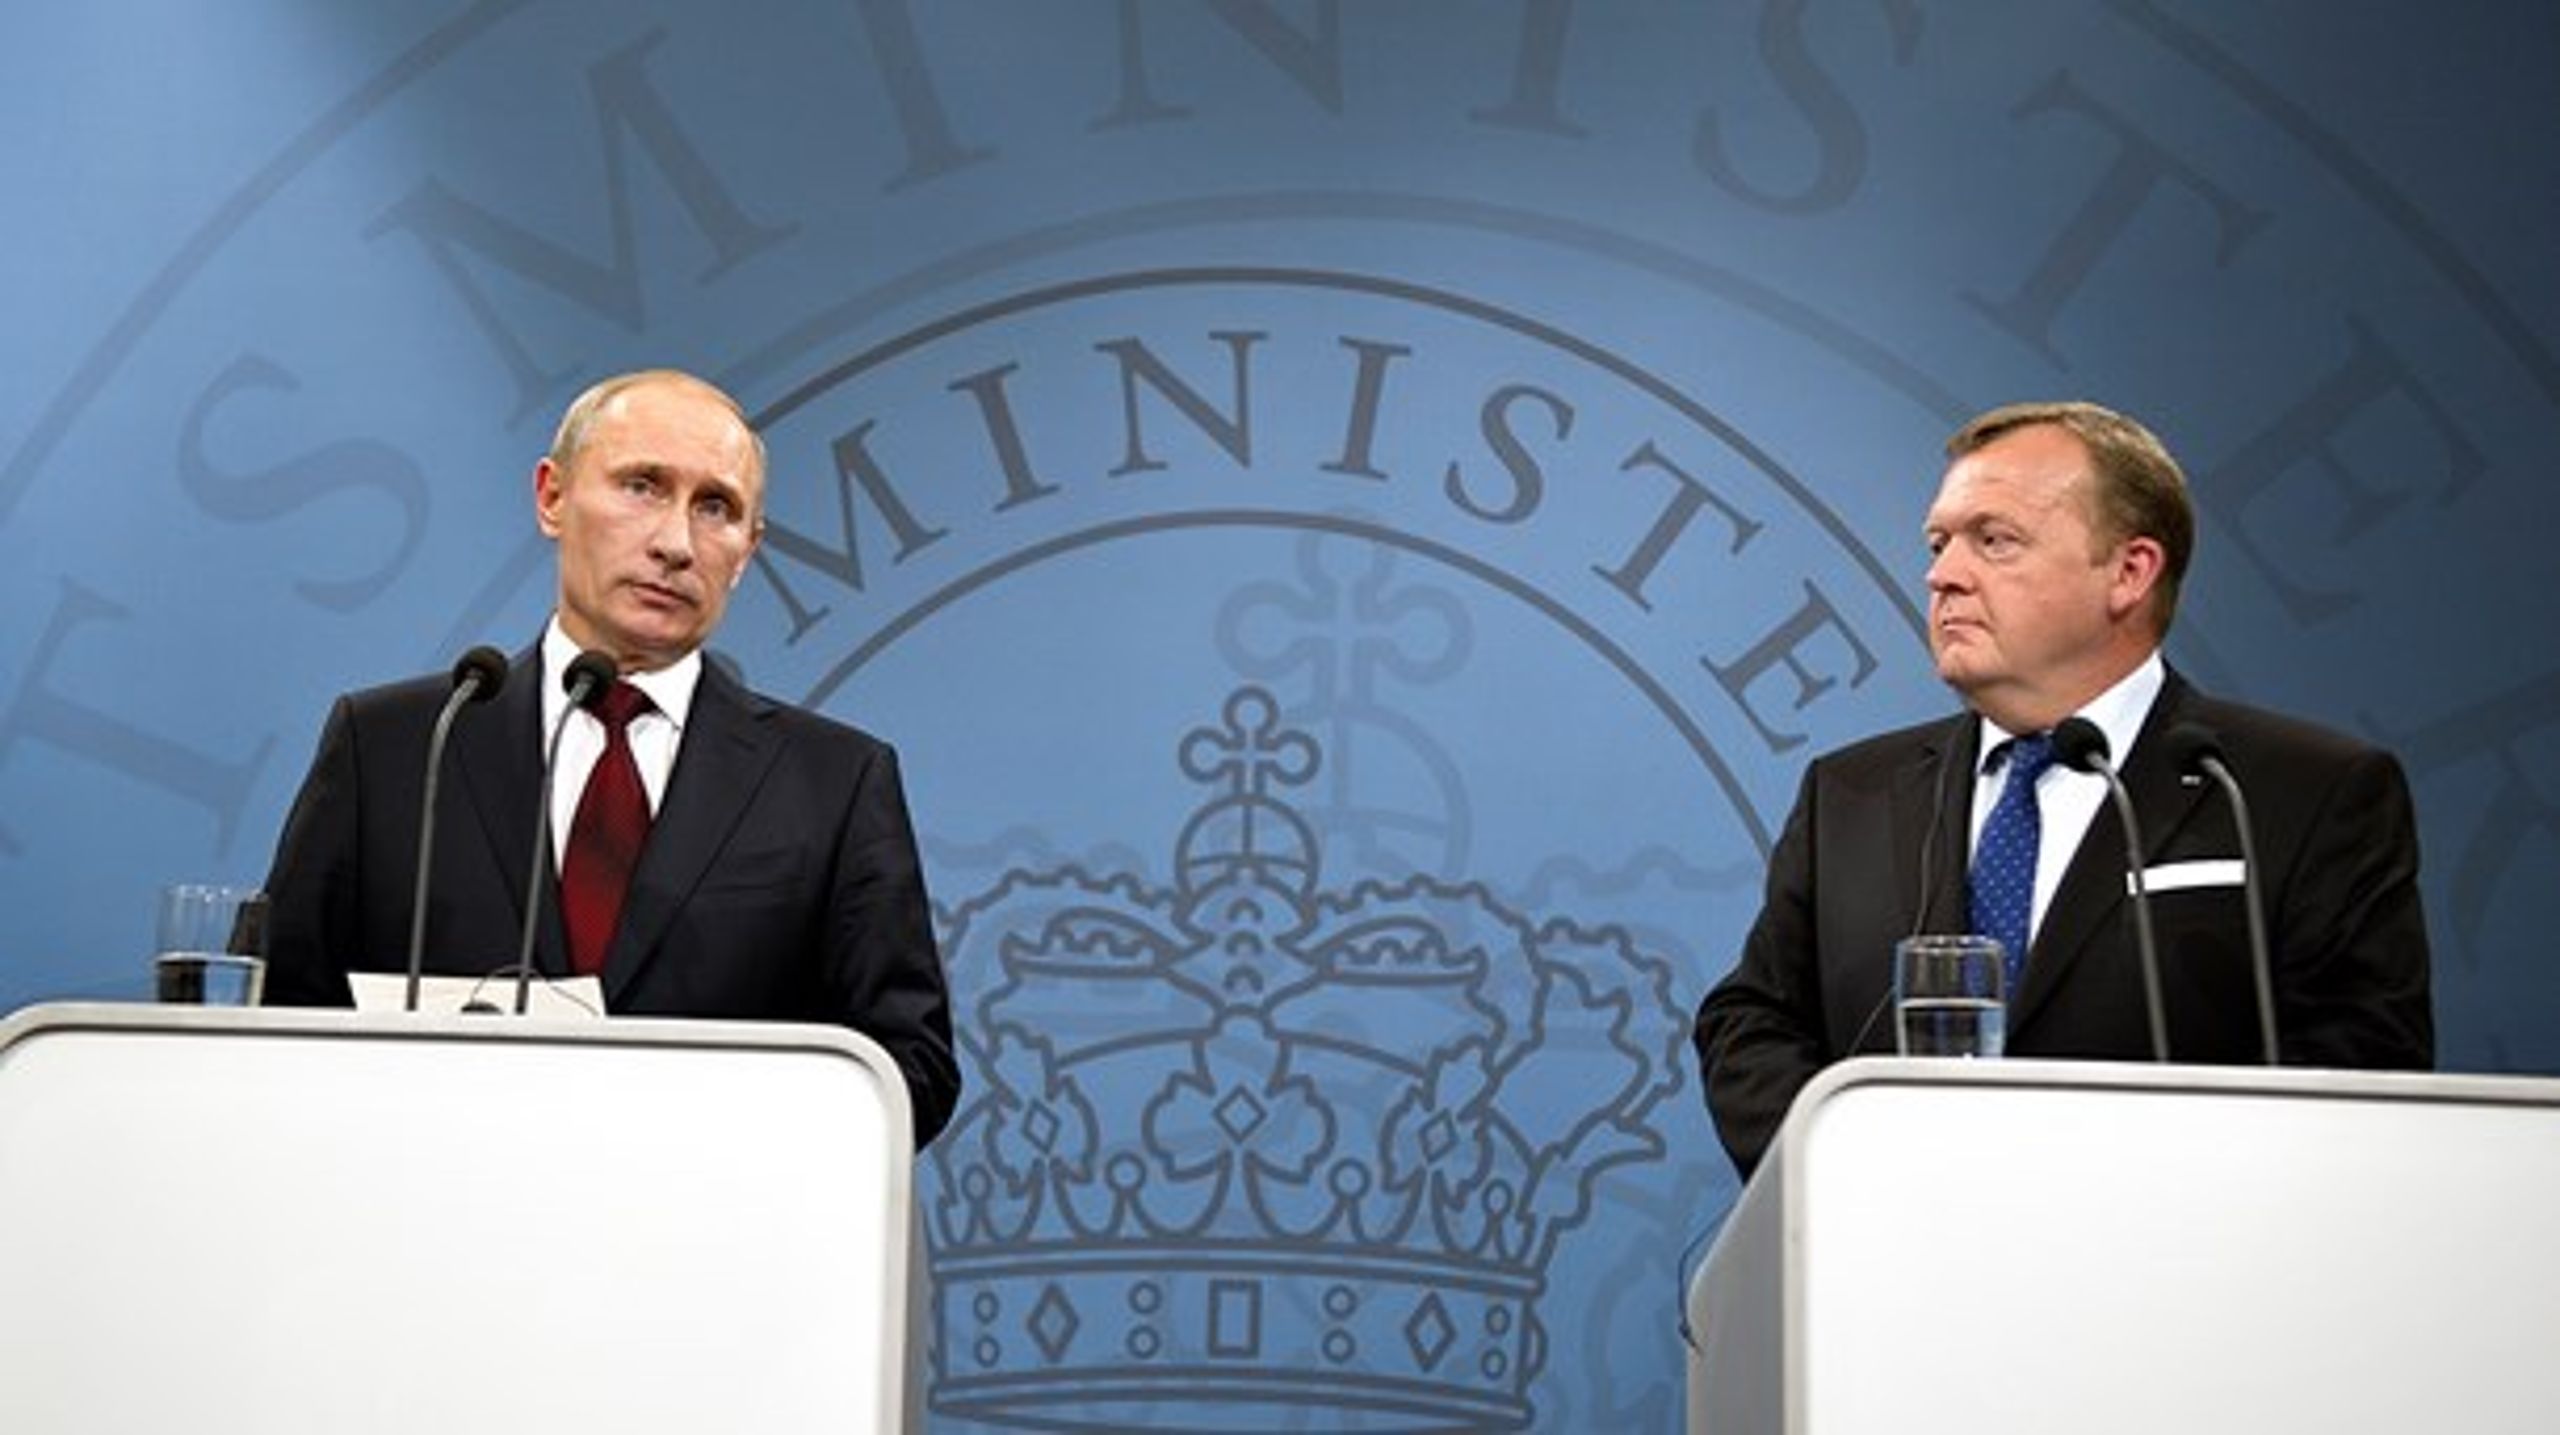 I 2011 besøgte den daværende russiske premierminister Vladimir Putin statsminister Lars Løkke Rasmussen (V). Siden er Putin igen blevet præsident, og det europæiske forhold til Rusland er blevet mere anspændt.&nbsp;